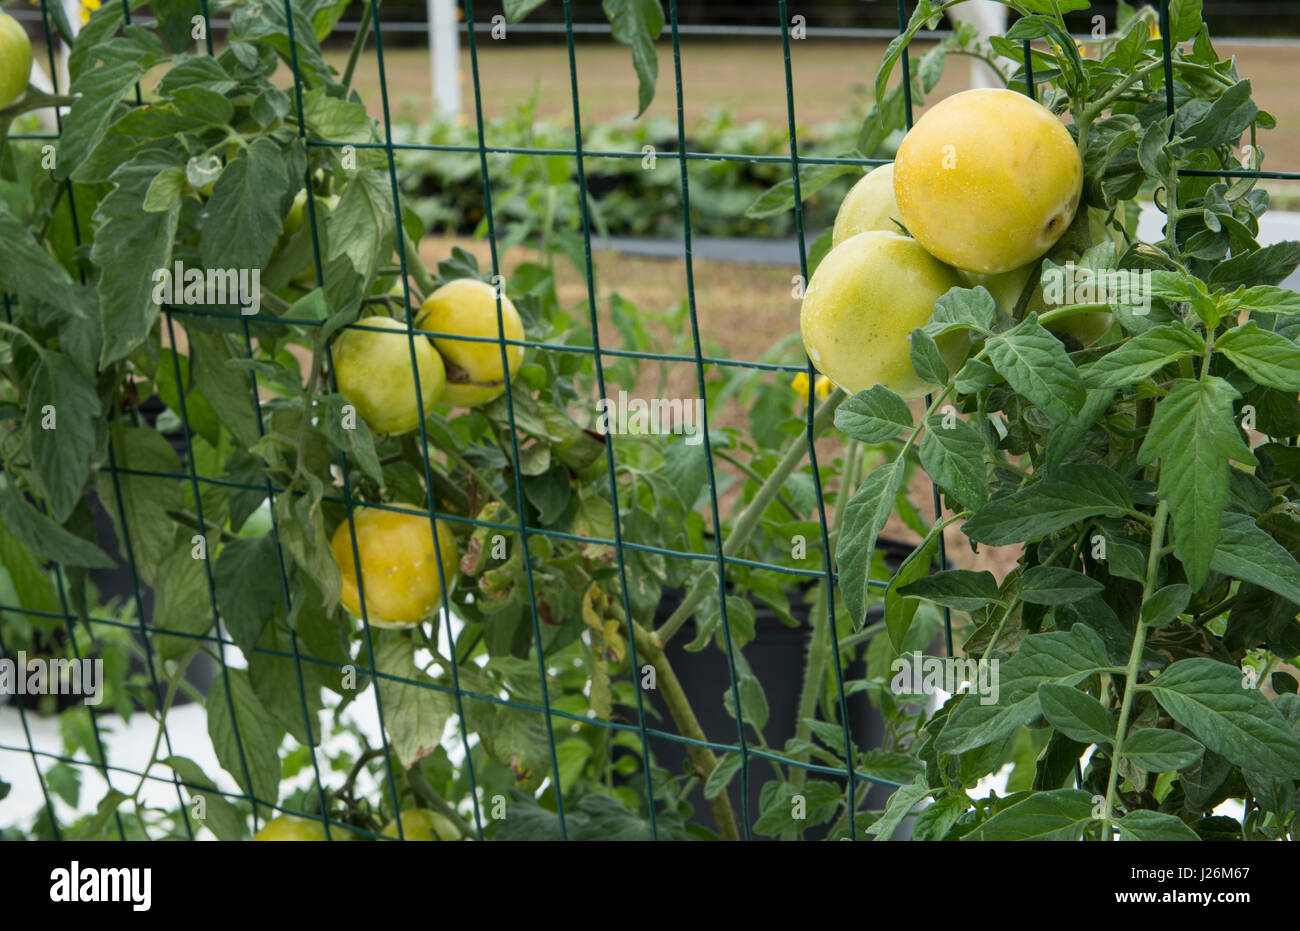 Orgánica de la Florida Central casa jardín con plantas de tomate y verduras en el patio para comer una dieta sana y cooperativa agraria Foto de stock